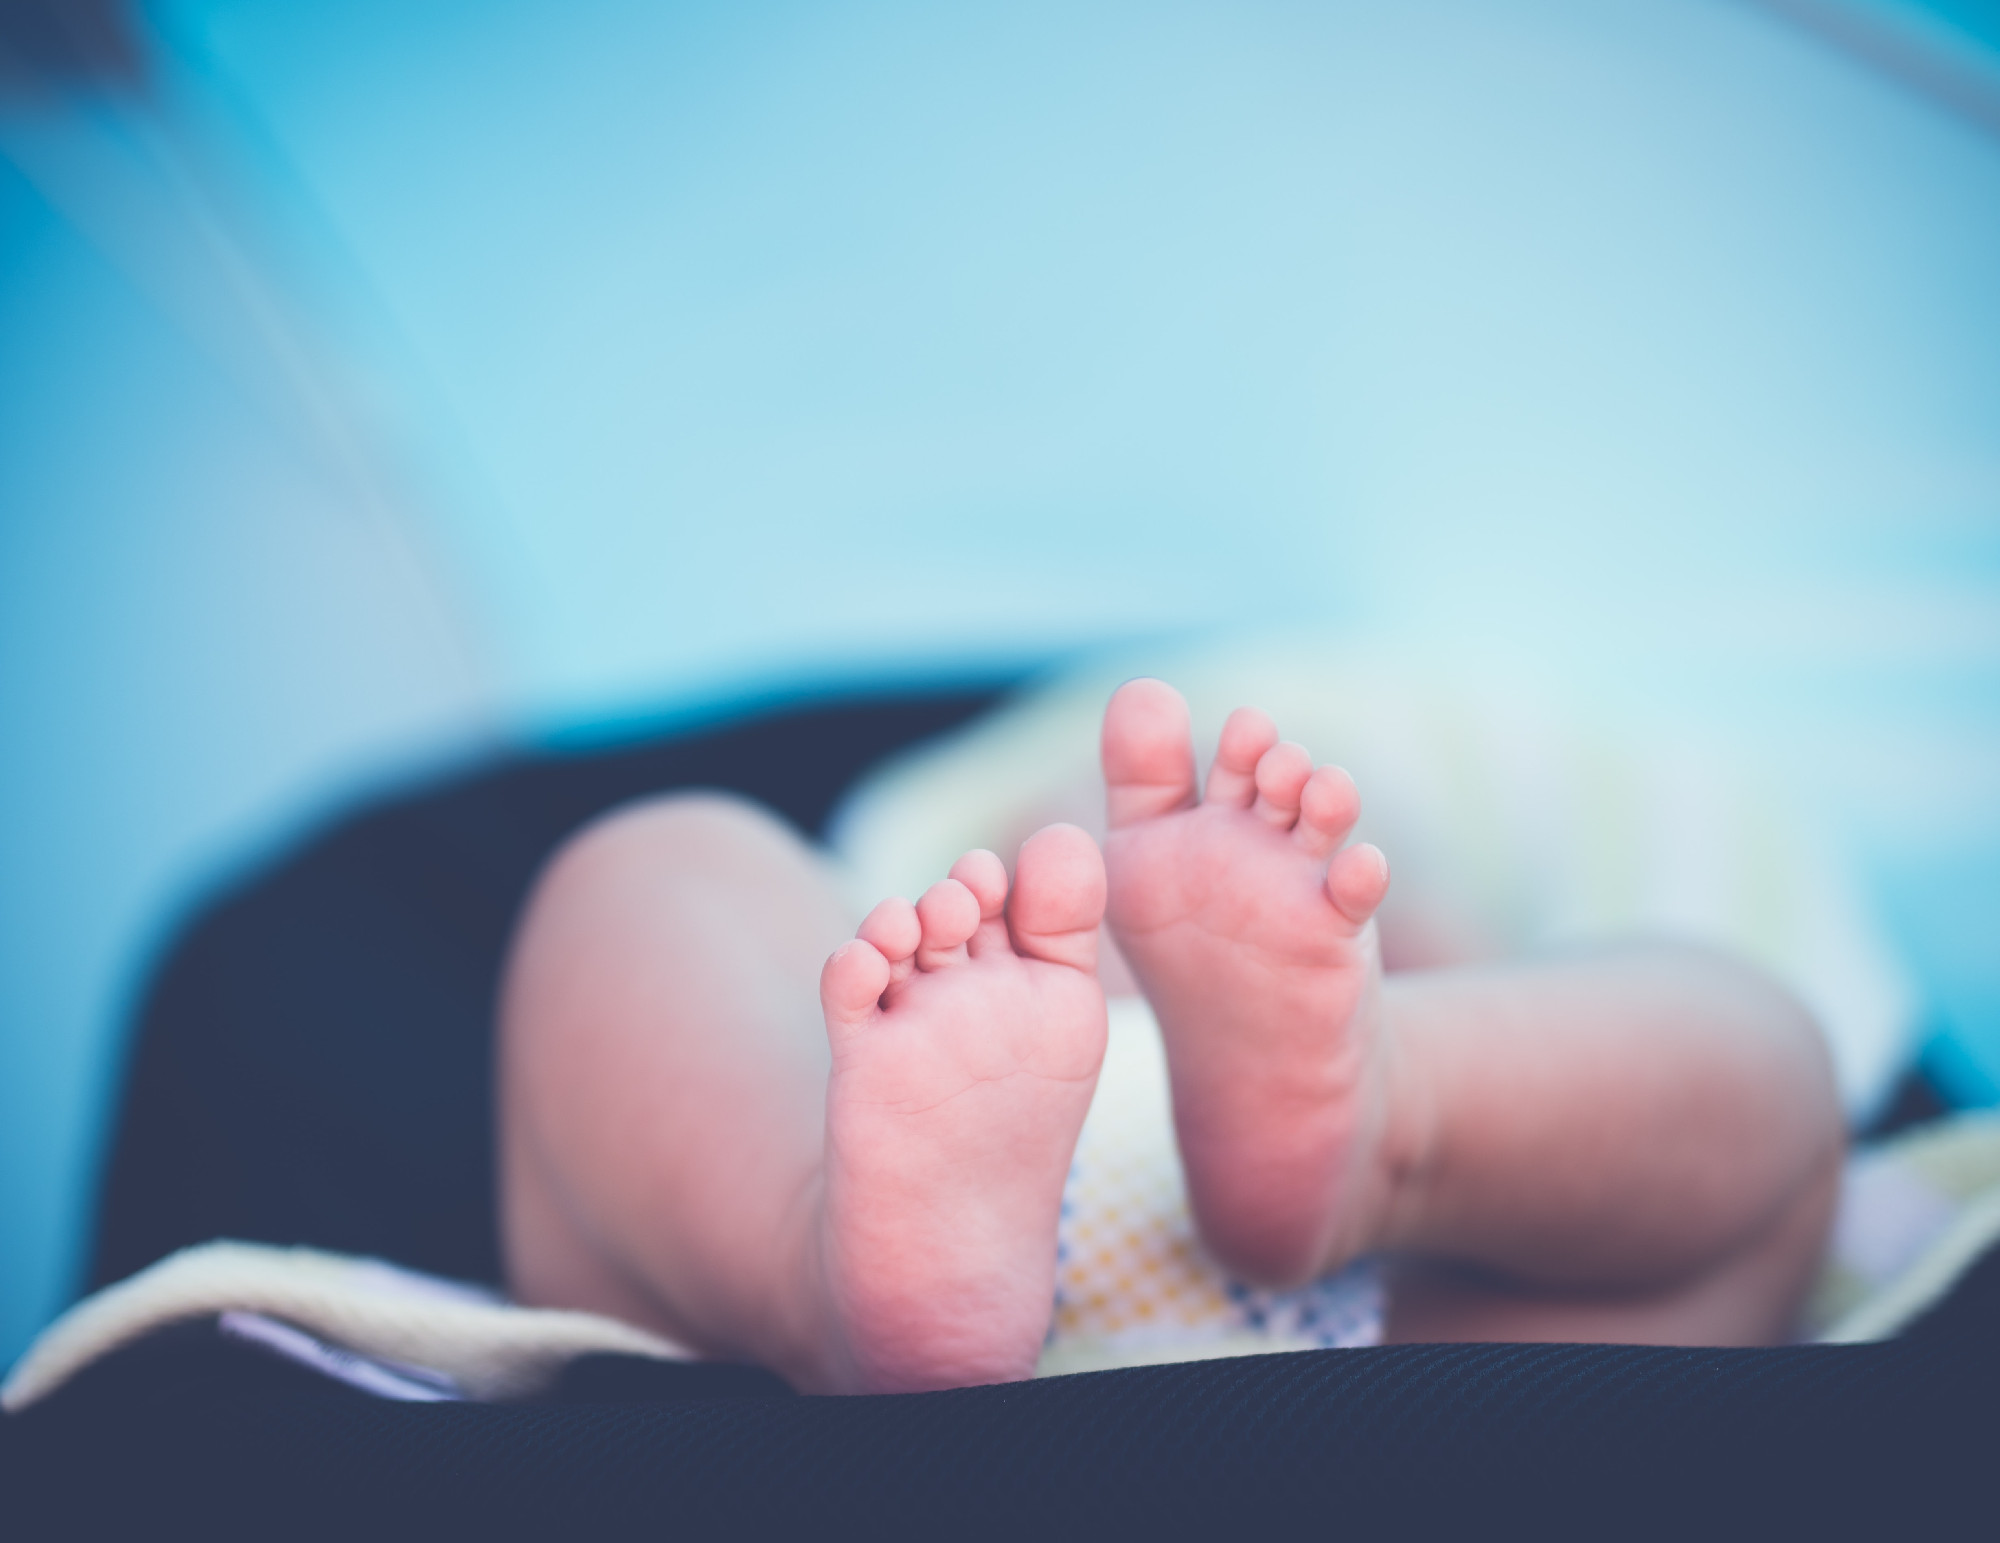 Két és fél hónapra bezár a kalocsai szülészet „humánerőforrás problémák” miatt